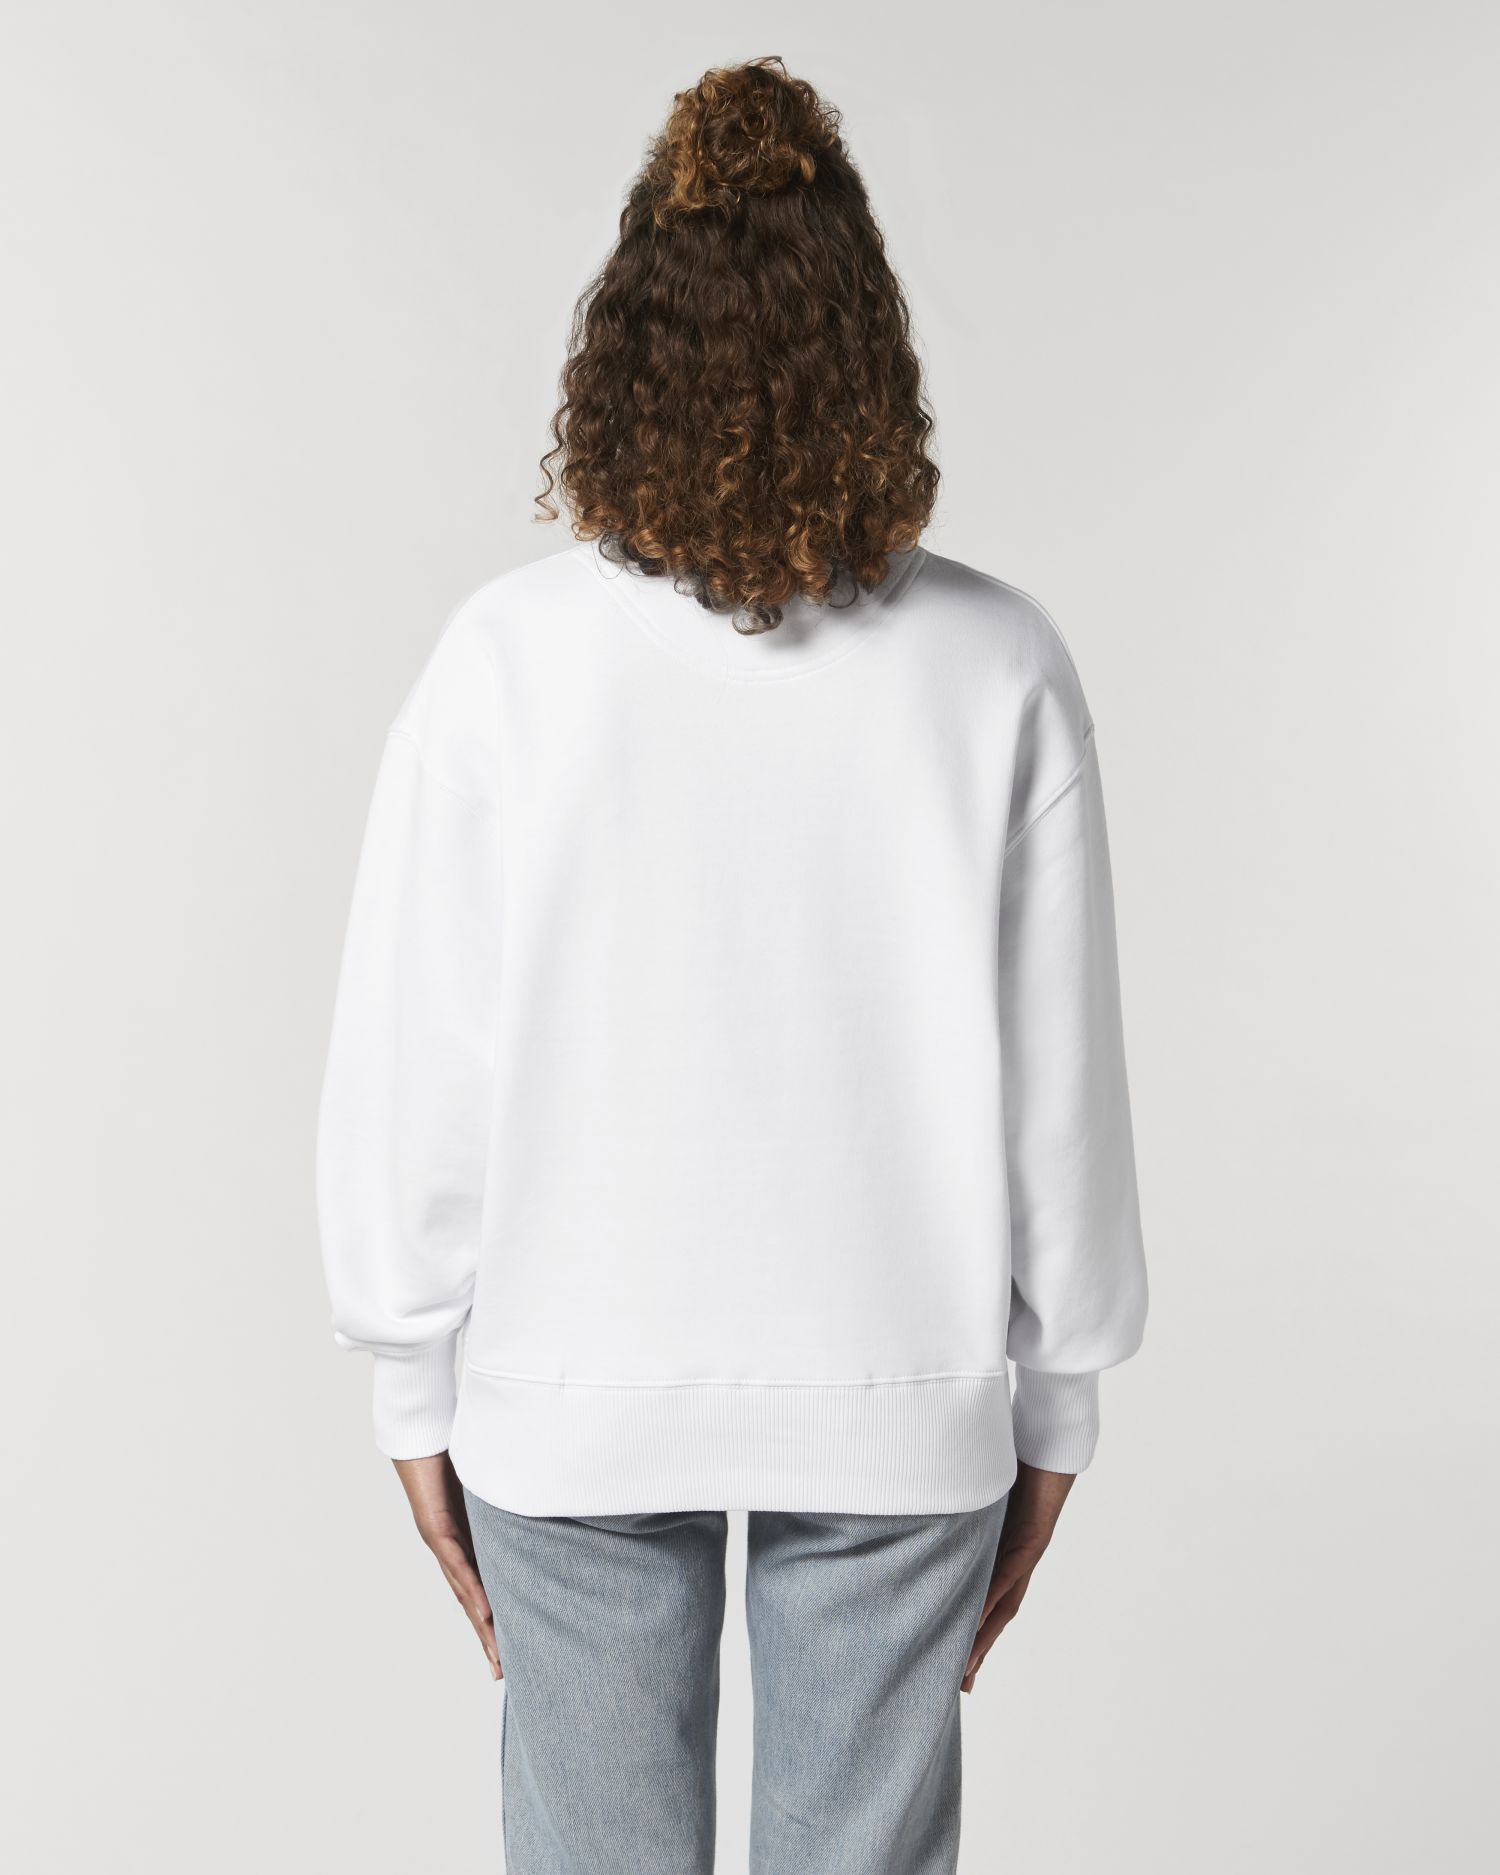 Crew neck sweatshirts Radder in Farbe White